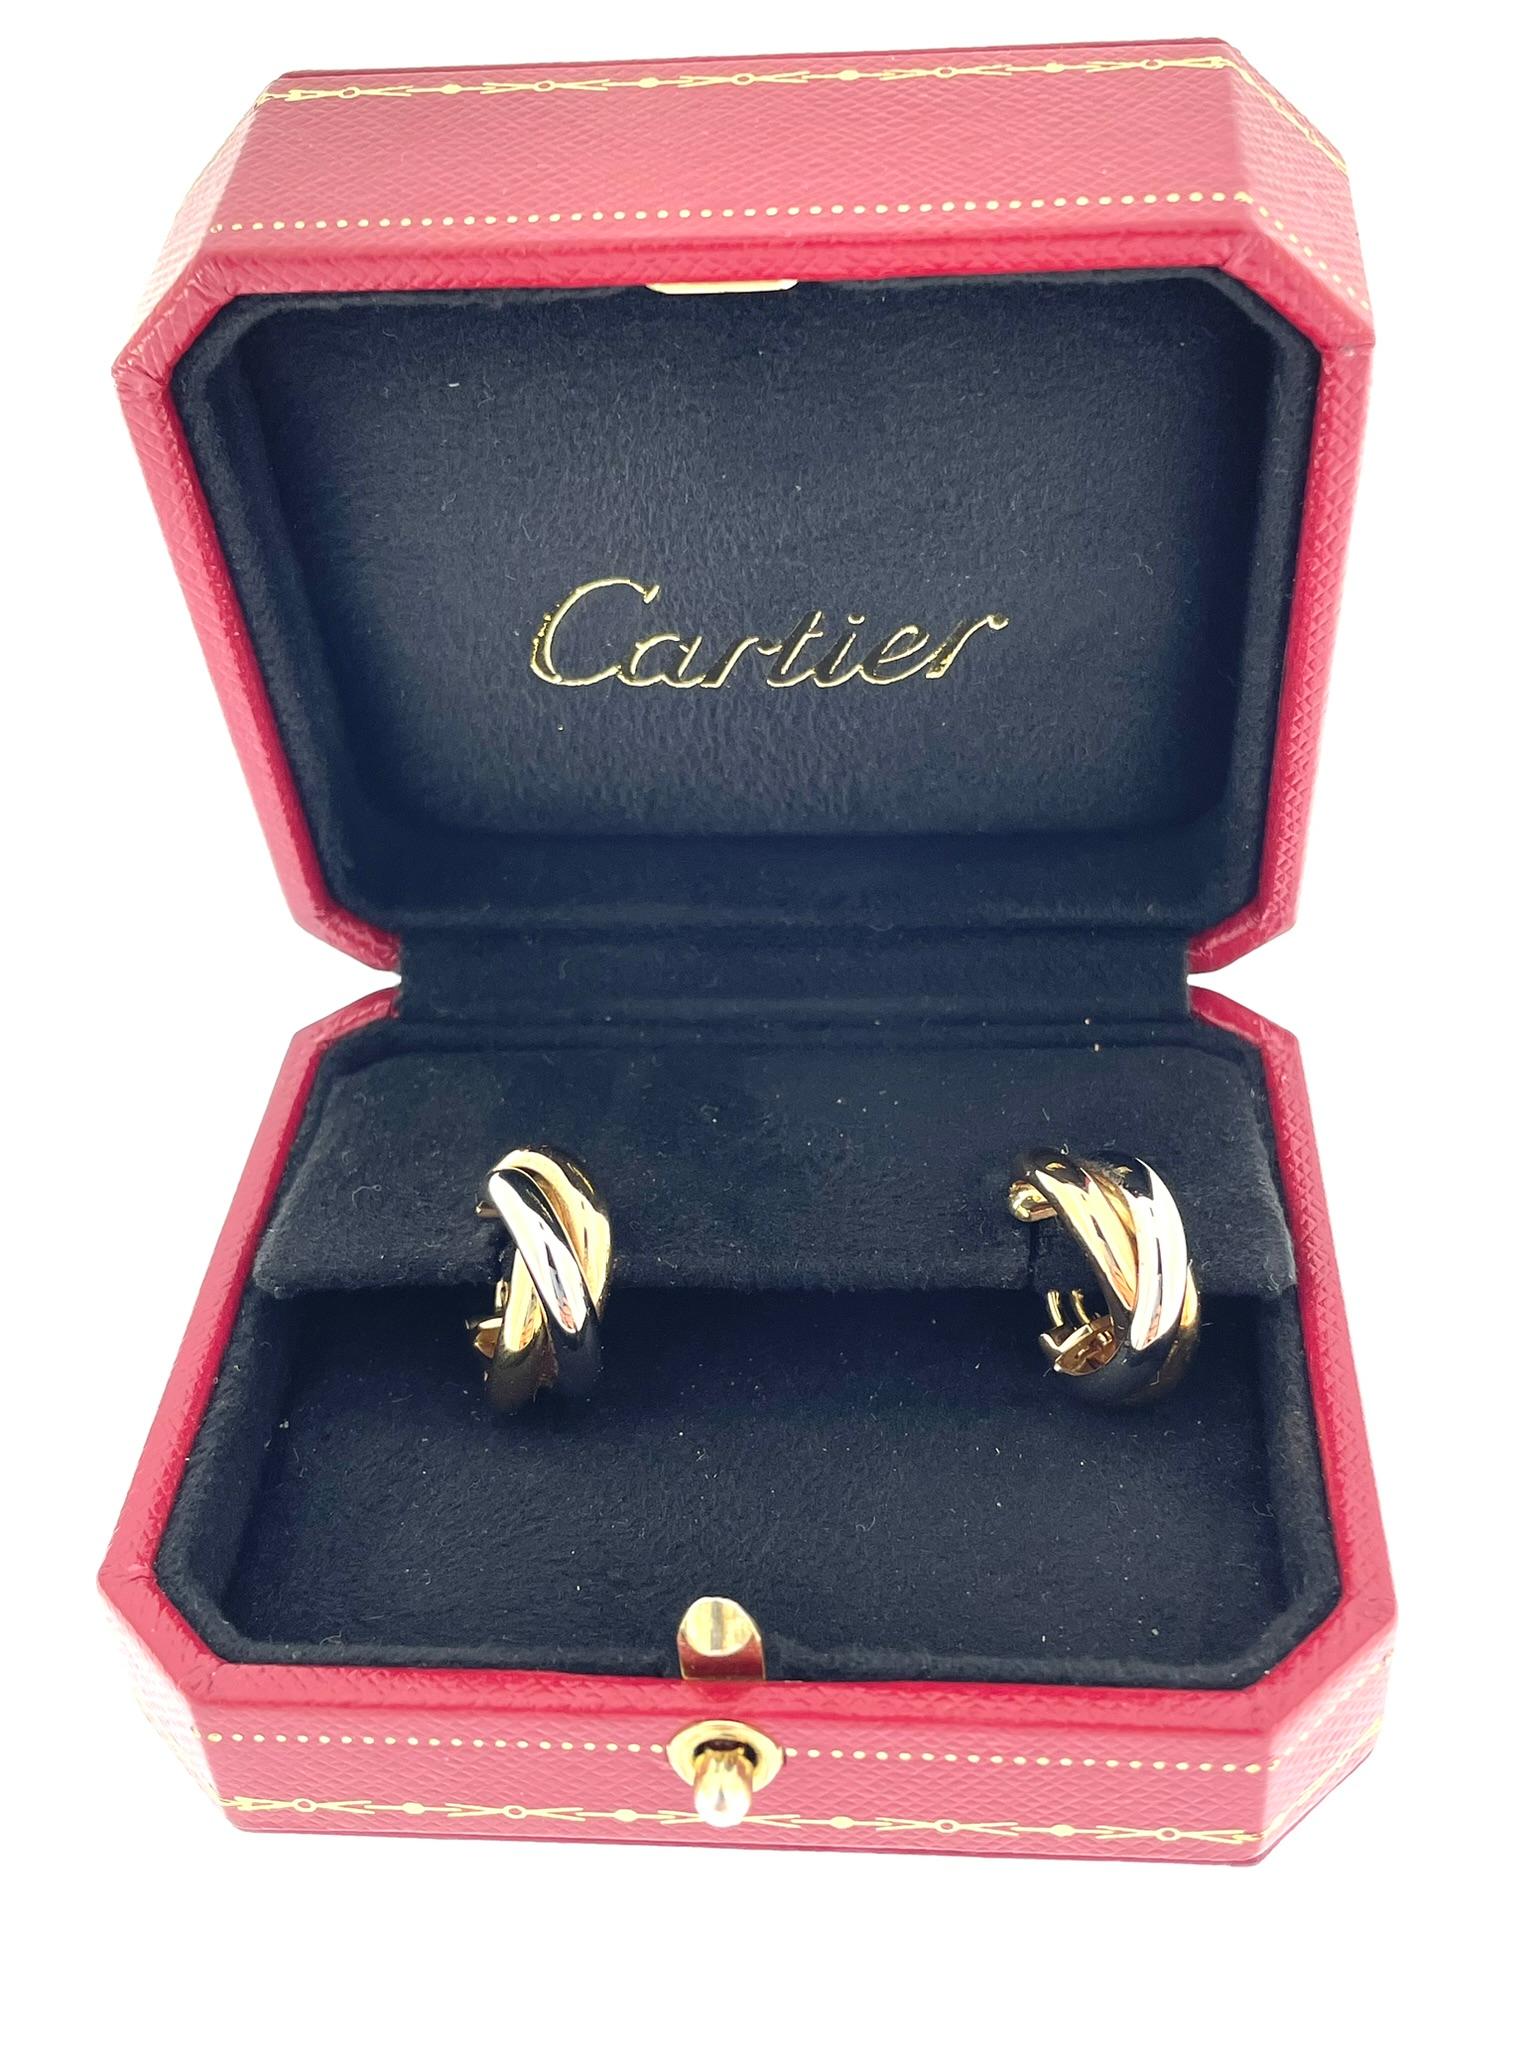 Die Cartier Trinity Ohrringe aus 18-karätigem Gold sind ein luxuriöses und ikonisches Accessoire des renommierten französischen Juwelierhauses Cartier. Diese Ohrringe sind Teil der Kollektion Trinity de Cartier, die für ihr zeitloses und